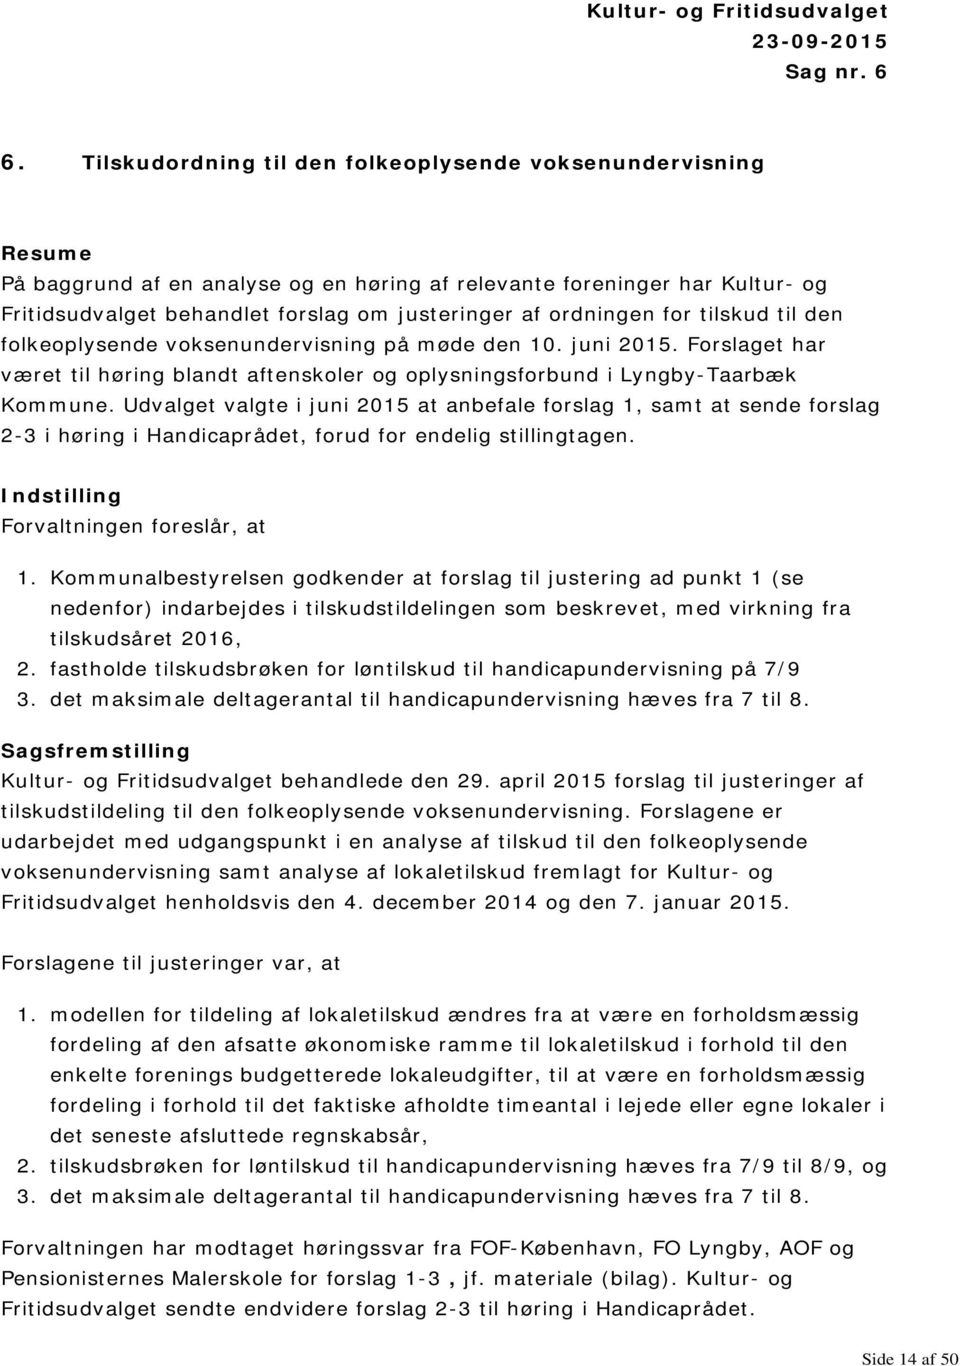 ordningen for tilskud til den folkeoplysende voksenundervisning på møde den 10. juni 2015. Forslaget har været til høring blandt aftenskoler og oplysningsforbund i Lyngby-Taarbæk Kommune.